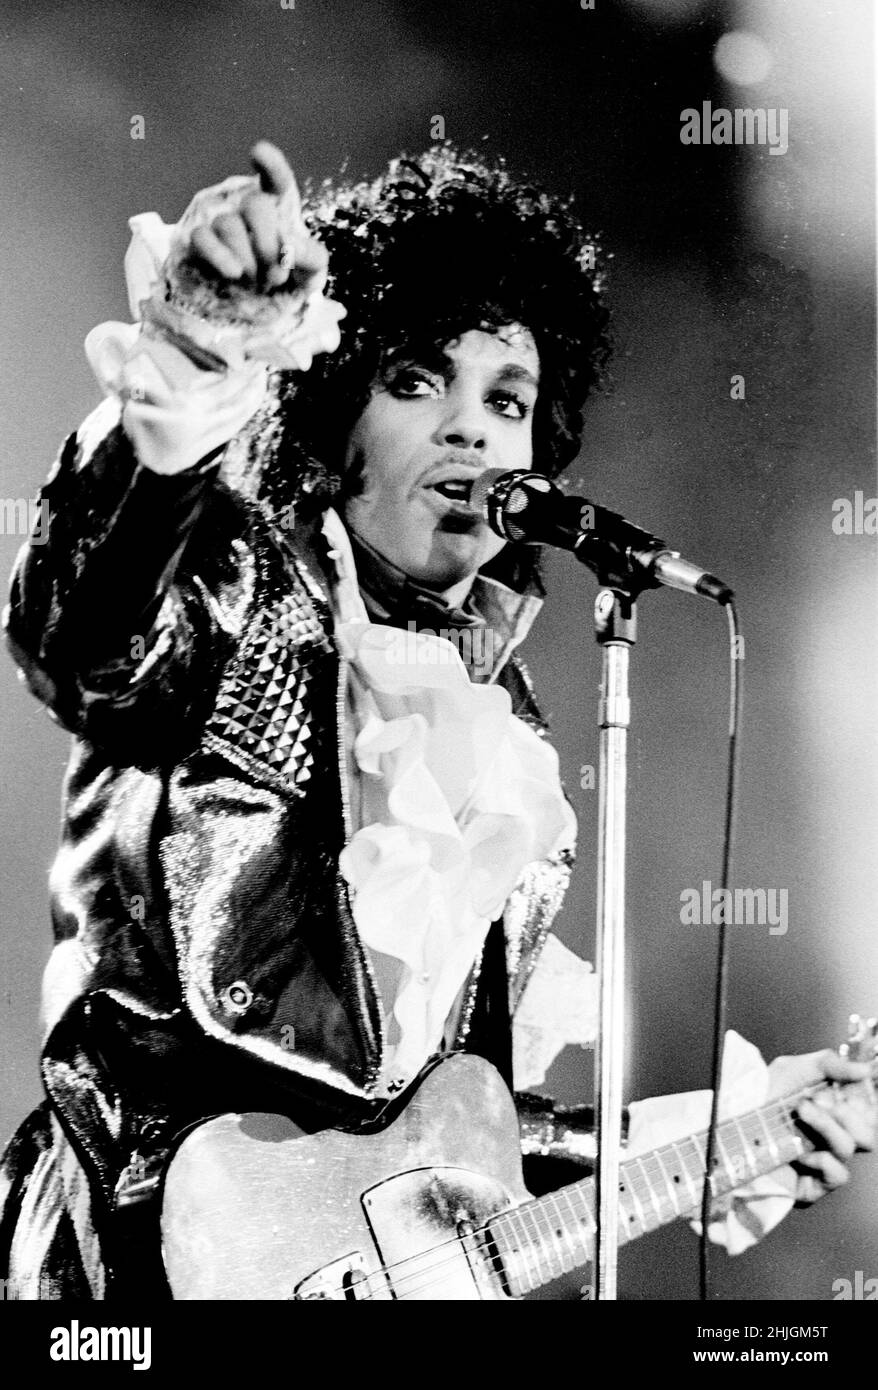 Prince tritt während der Purple Rain Tour um die 1980er Jahre auf.Quelle: Ron Wolfson / Rock Negative / MediaPunch Stockfoto